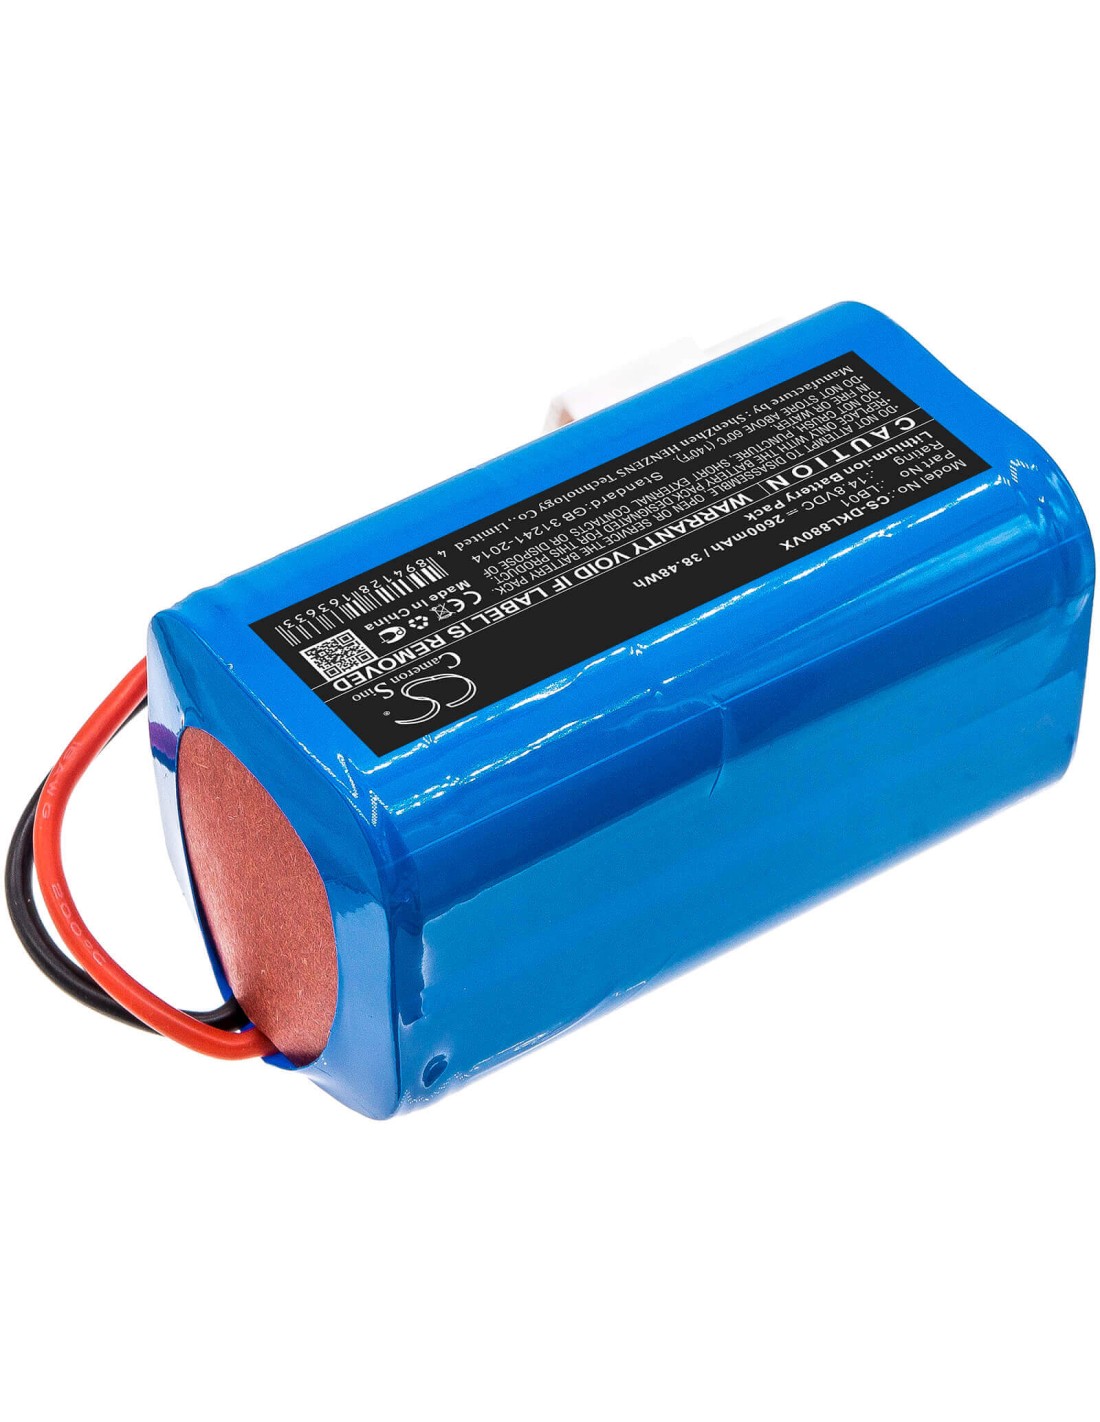 Battery for Donkey, Dl880 14.8V, 2600mAh - 38.48Wh